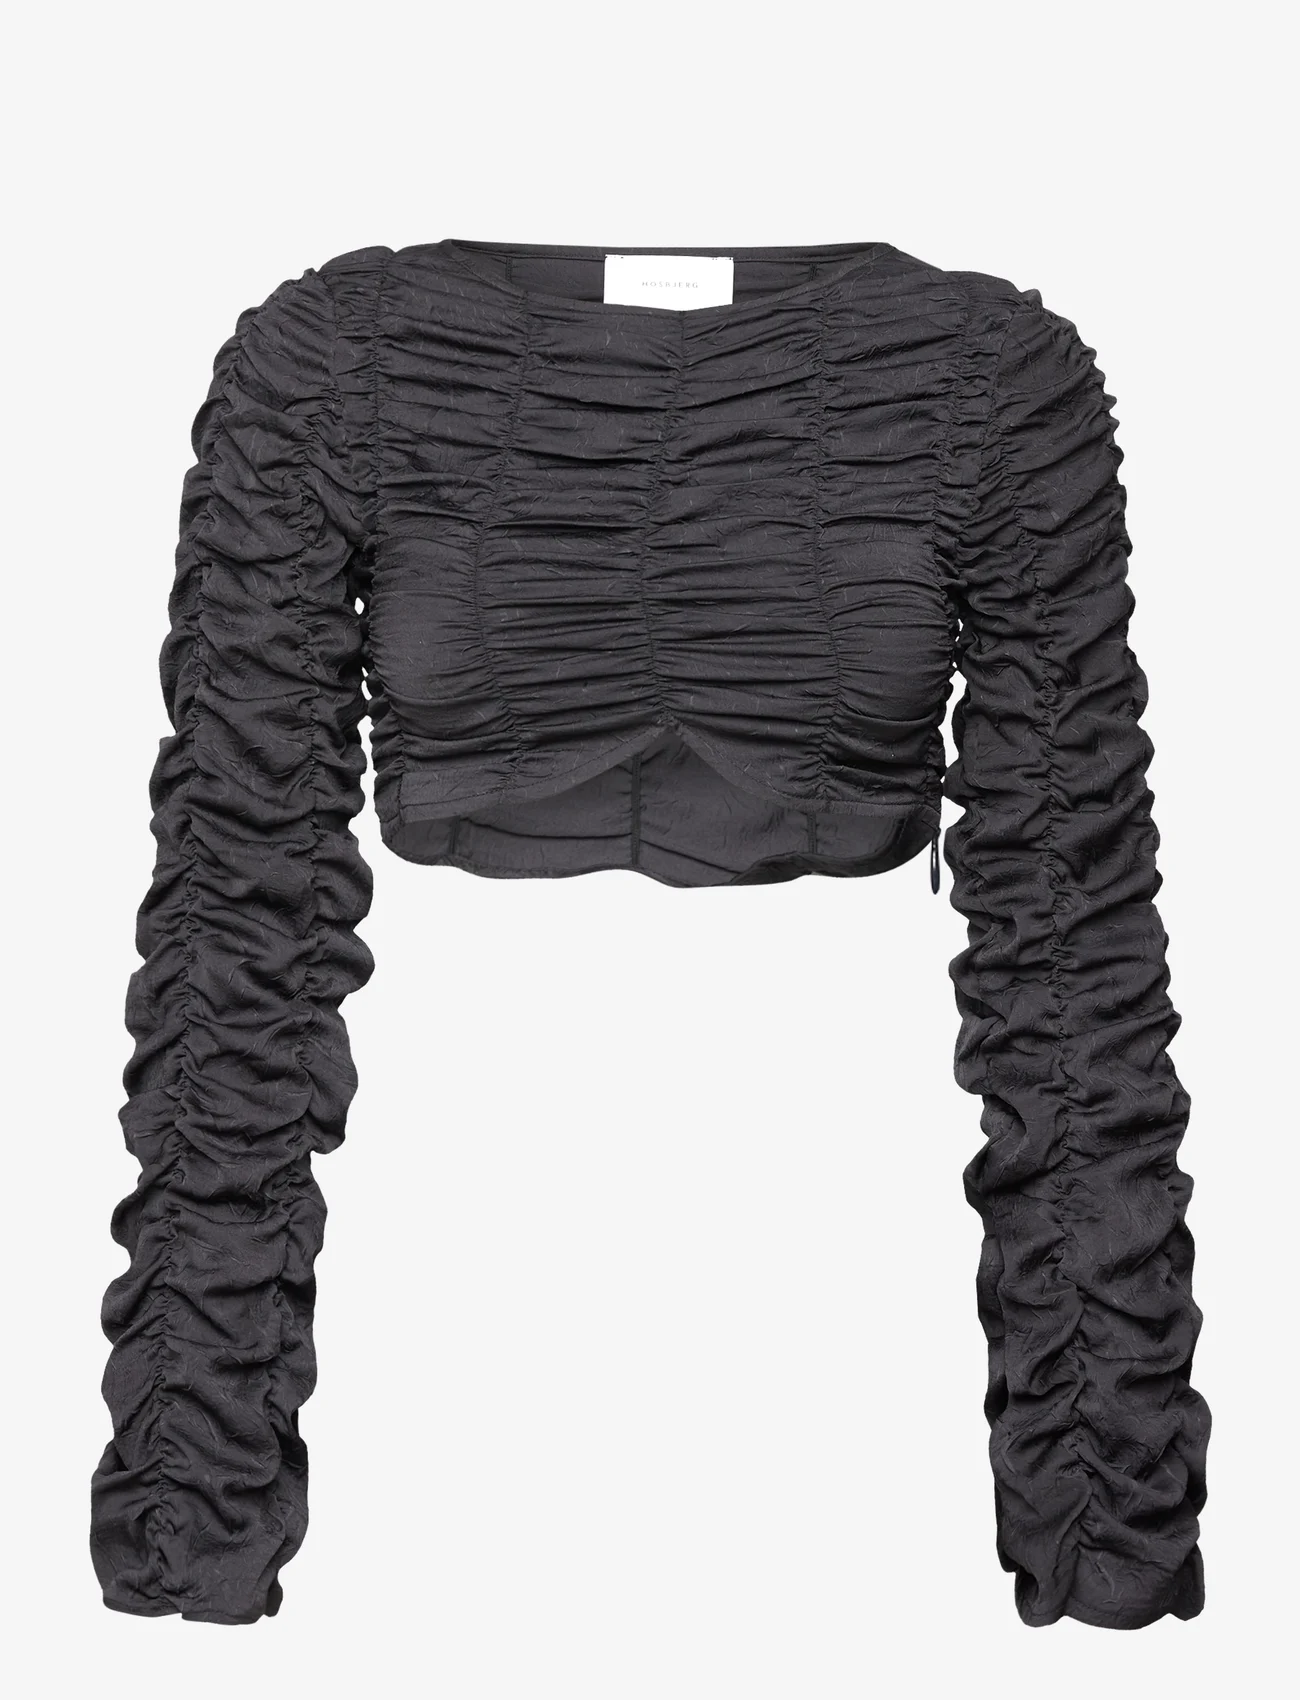 Hosbjerg - Isabel Vita Top - long-sleeved blouses - dark grey - 0